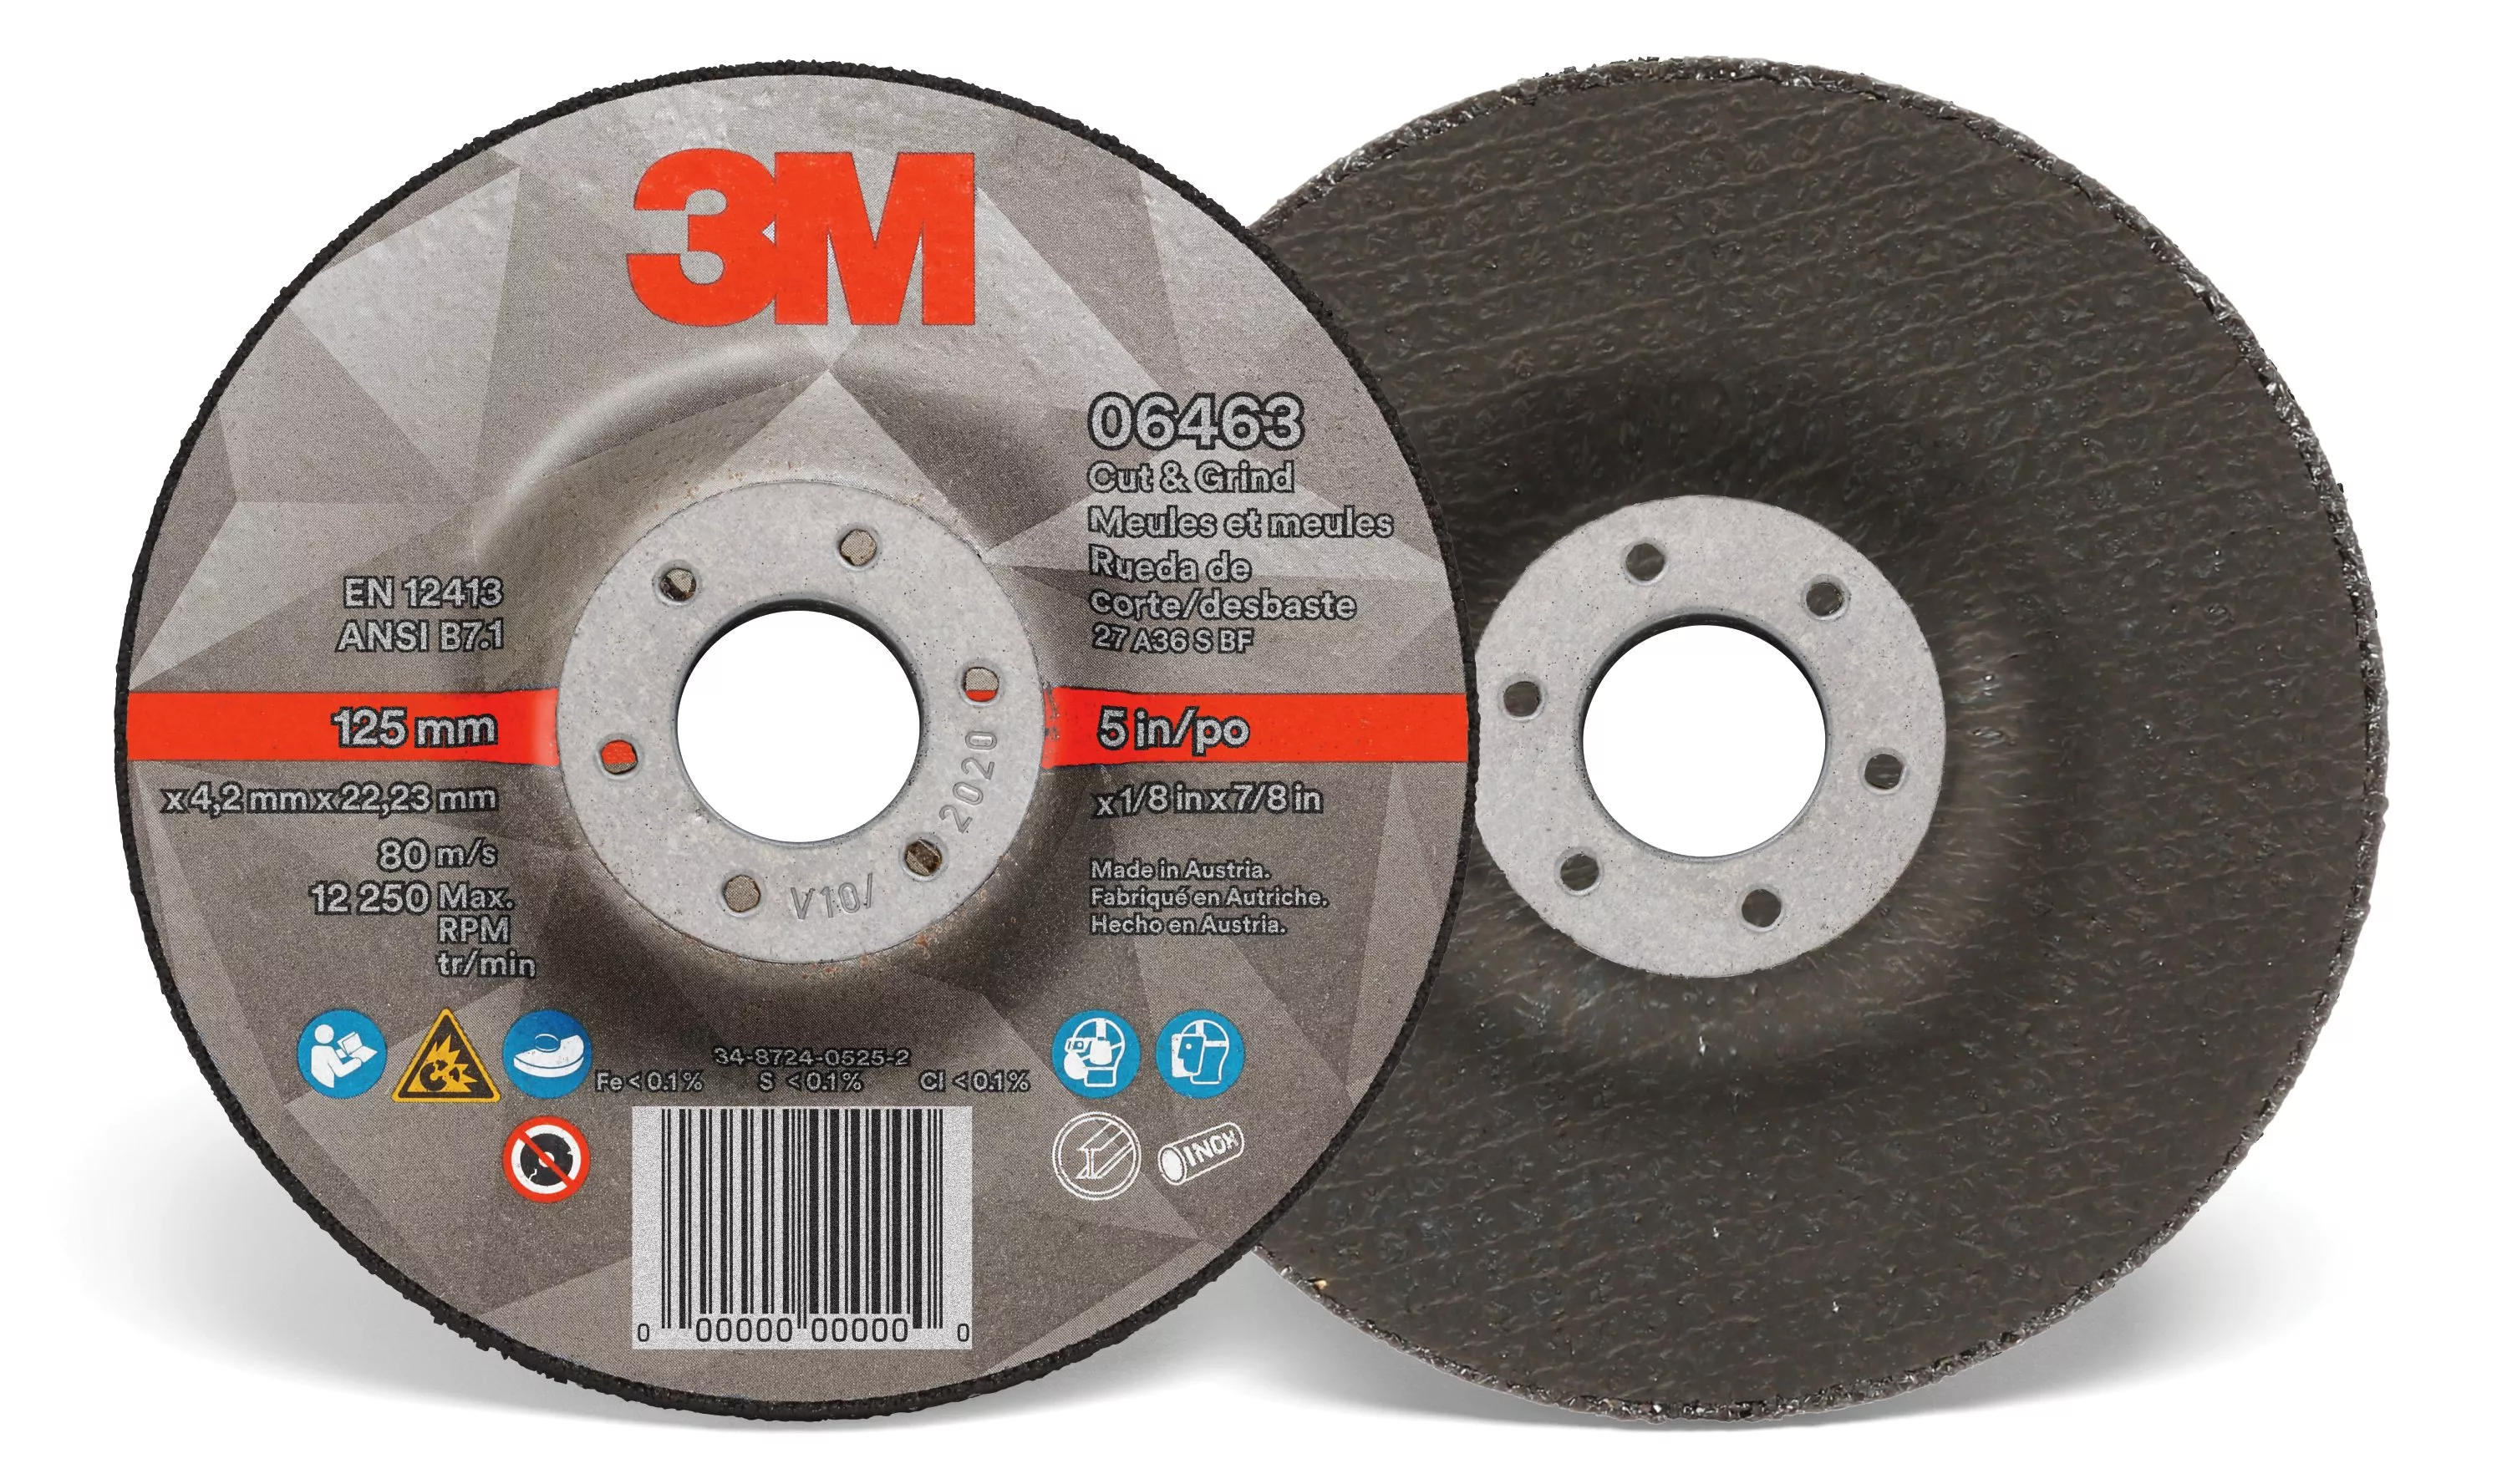 3M™ Cut & Grind Wheel, 06463, Type 27, 5 in x 1/8 in x 7/8 in,
10/Carton, 20 ea/Case